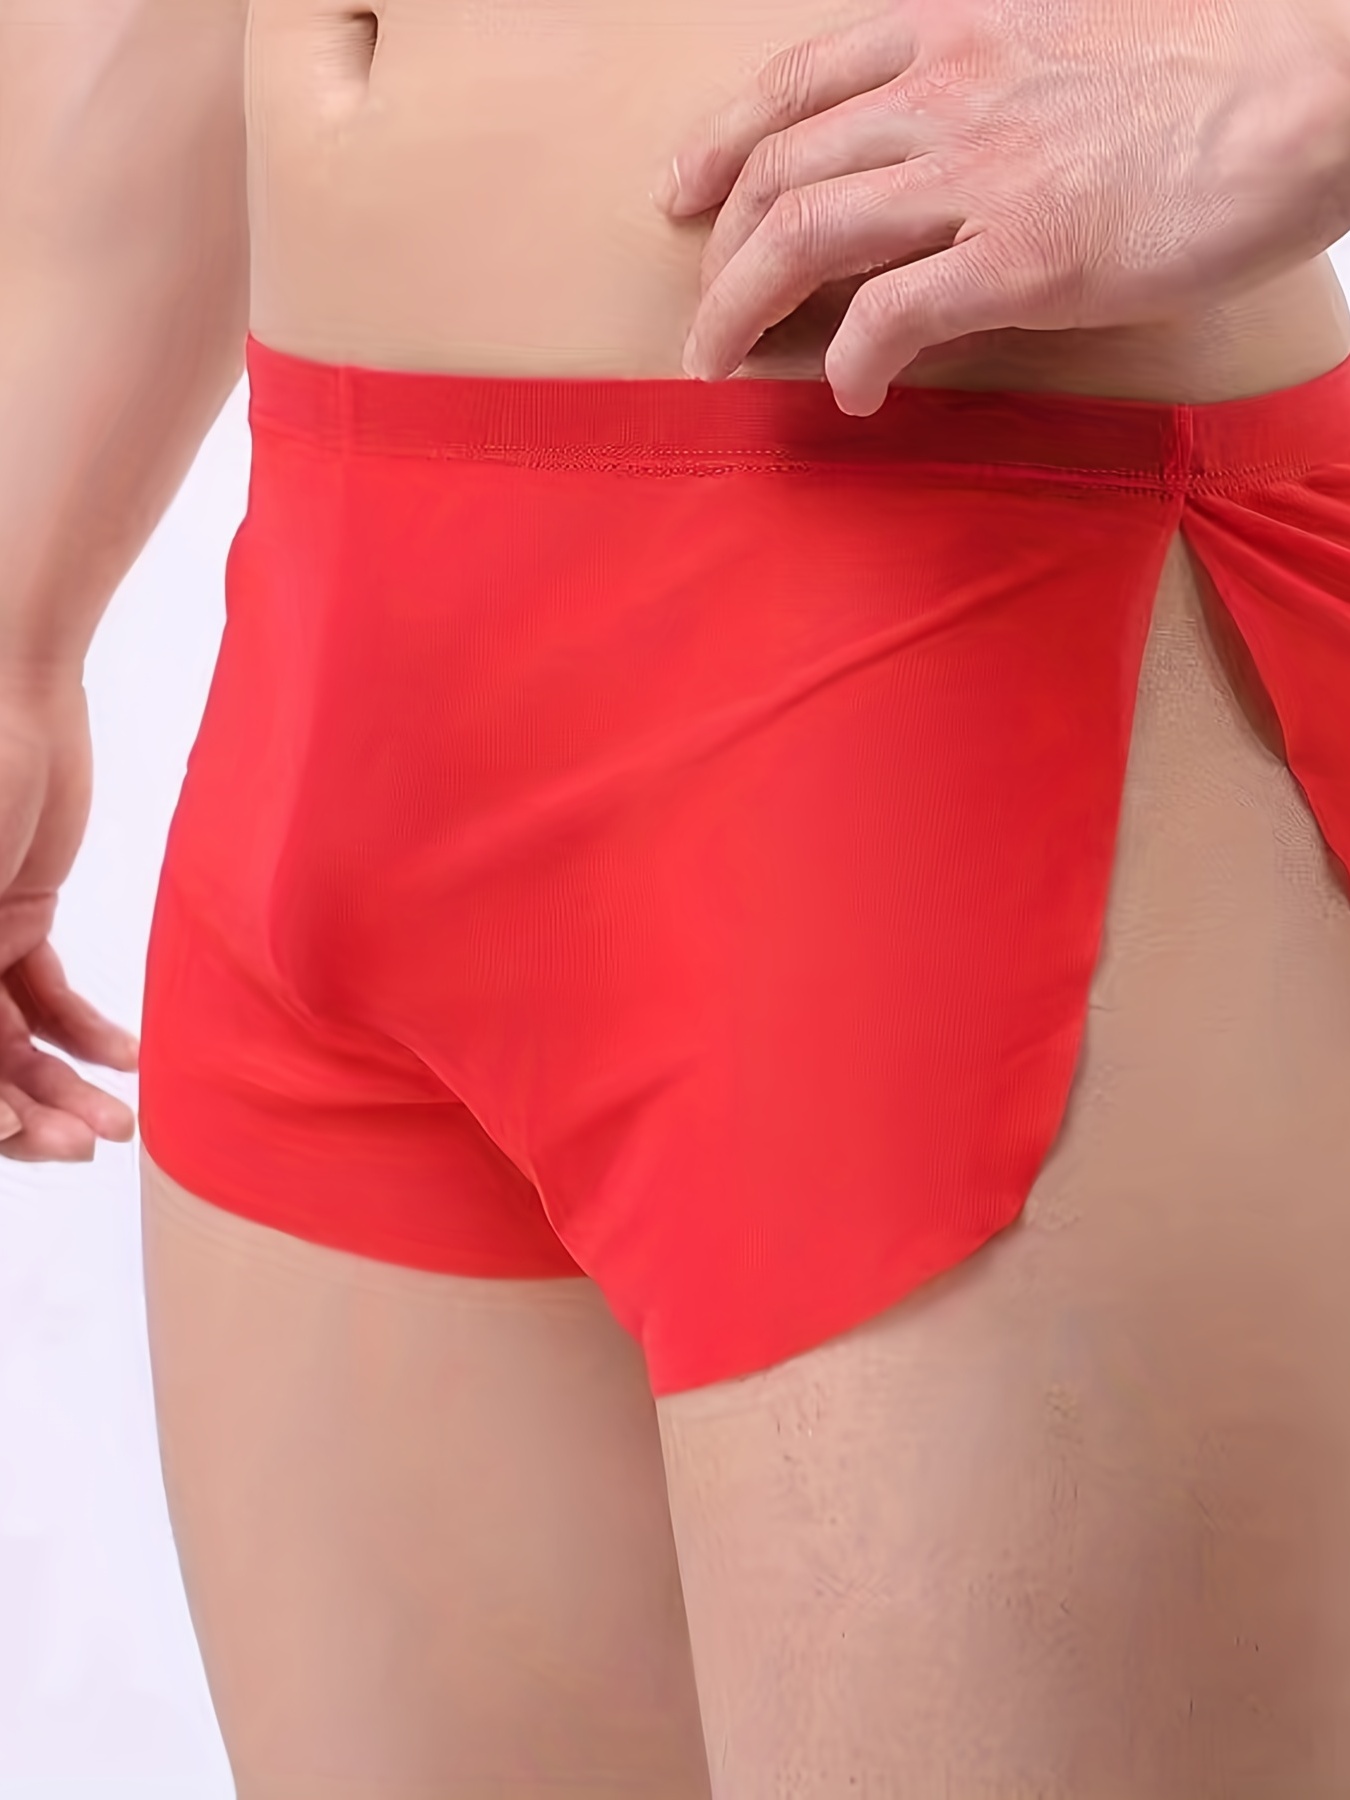 Men Boxer Shorts Seamless See-through Lounge Underwear Sheer Mesh